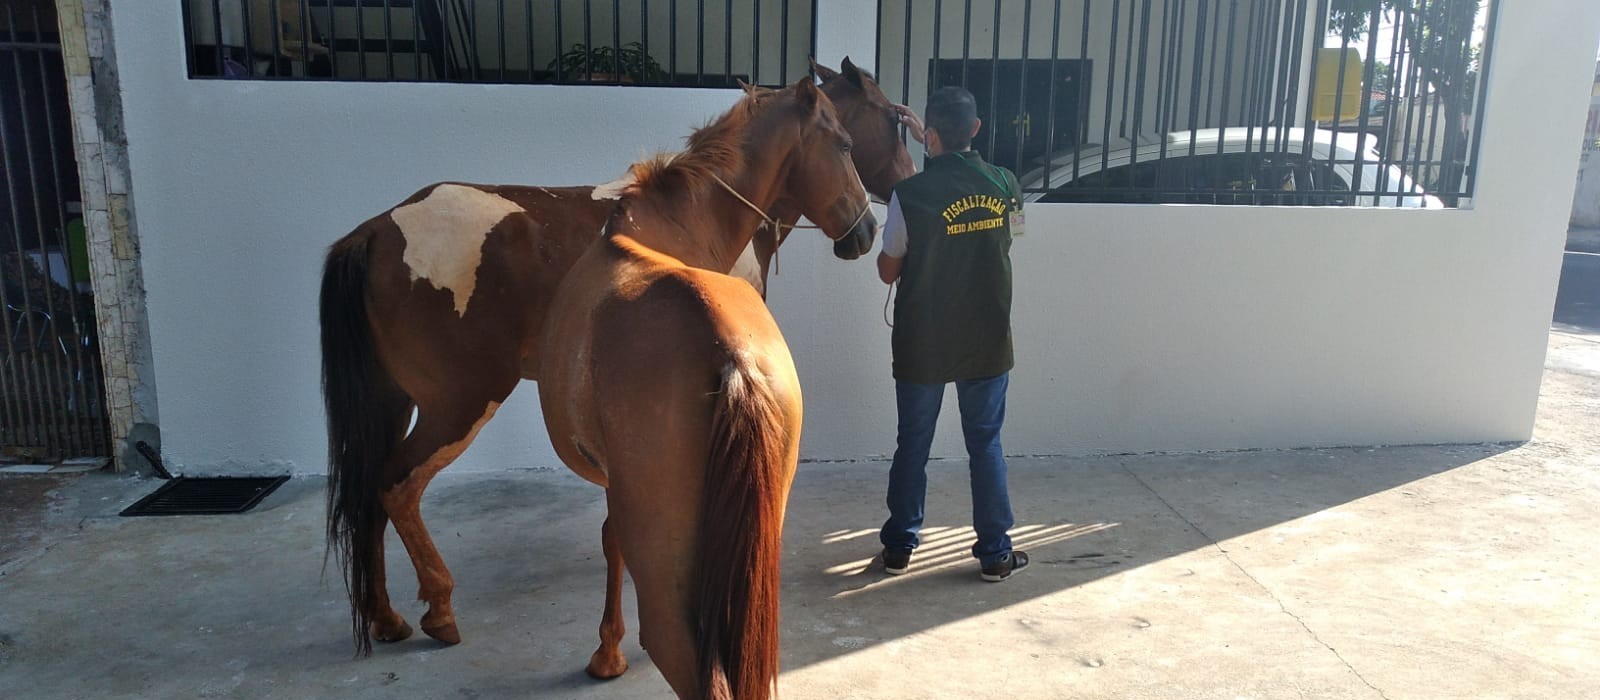 Cavalos feridos e abandonados são resgatados em Sarandi